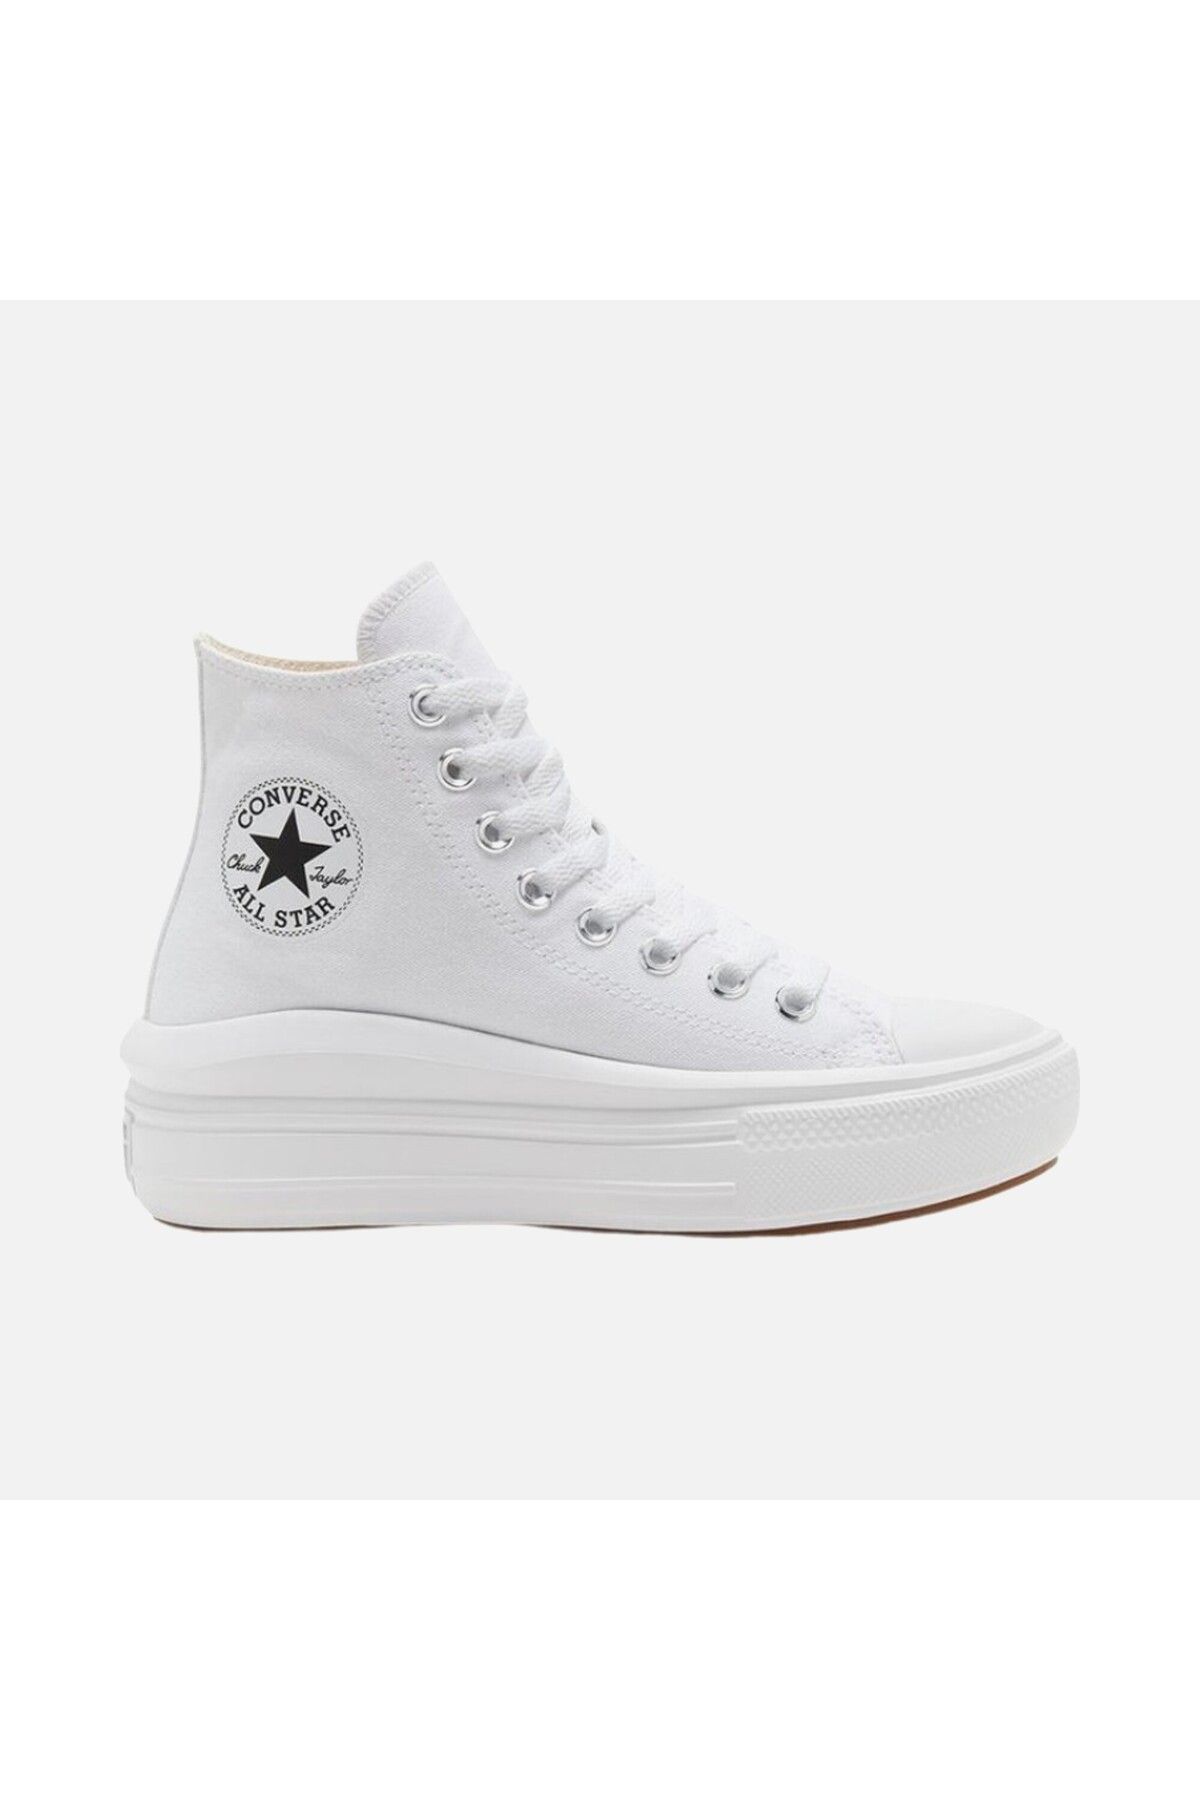 Converse Chuck Taylor All Star Move Platformlu Bilekli Sneaker Kanvas Boğazlı Ayakkabı Beyaz 568498c